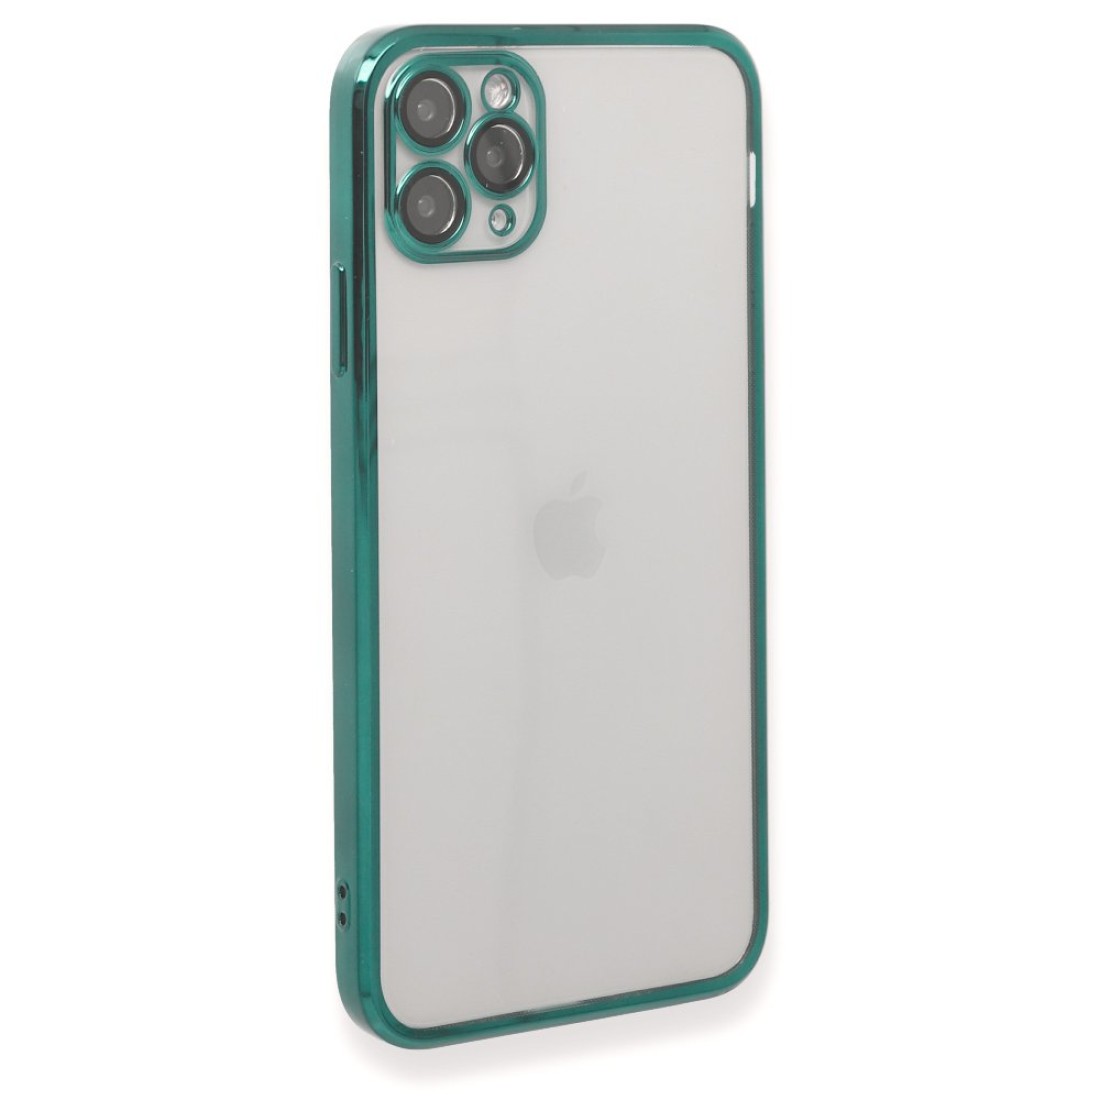 Apple iPhone 11 Pro Max Kılıf Razer Lensli Silikon - Yeşil